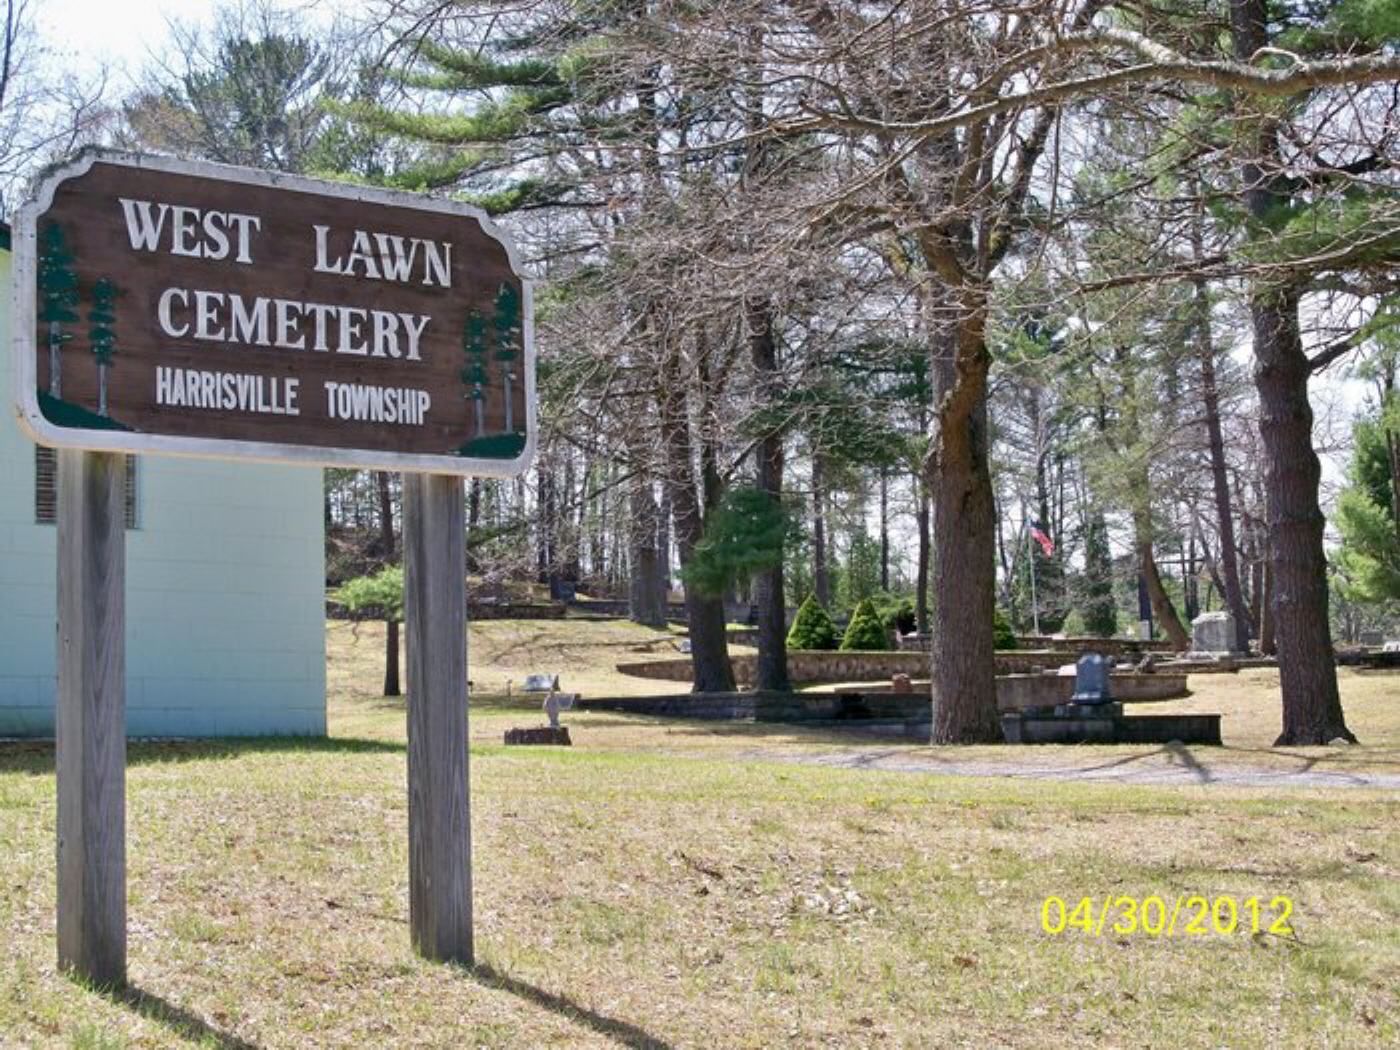 Westlawn AKA West Lawn AKA West Cemetery